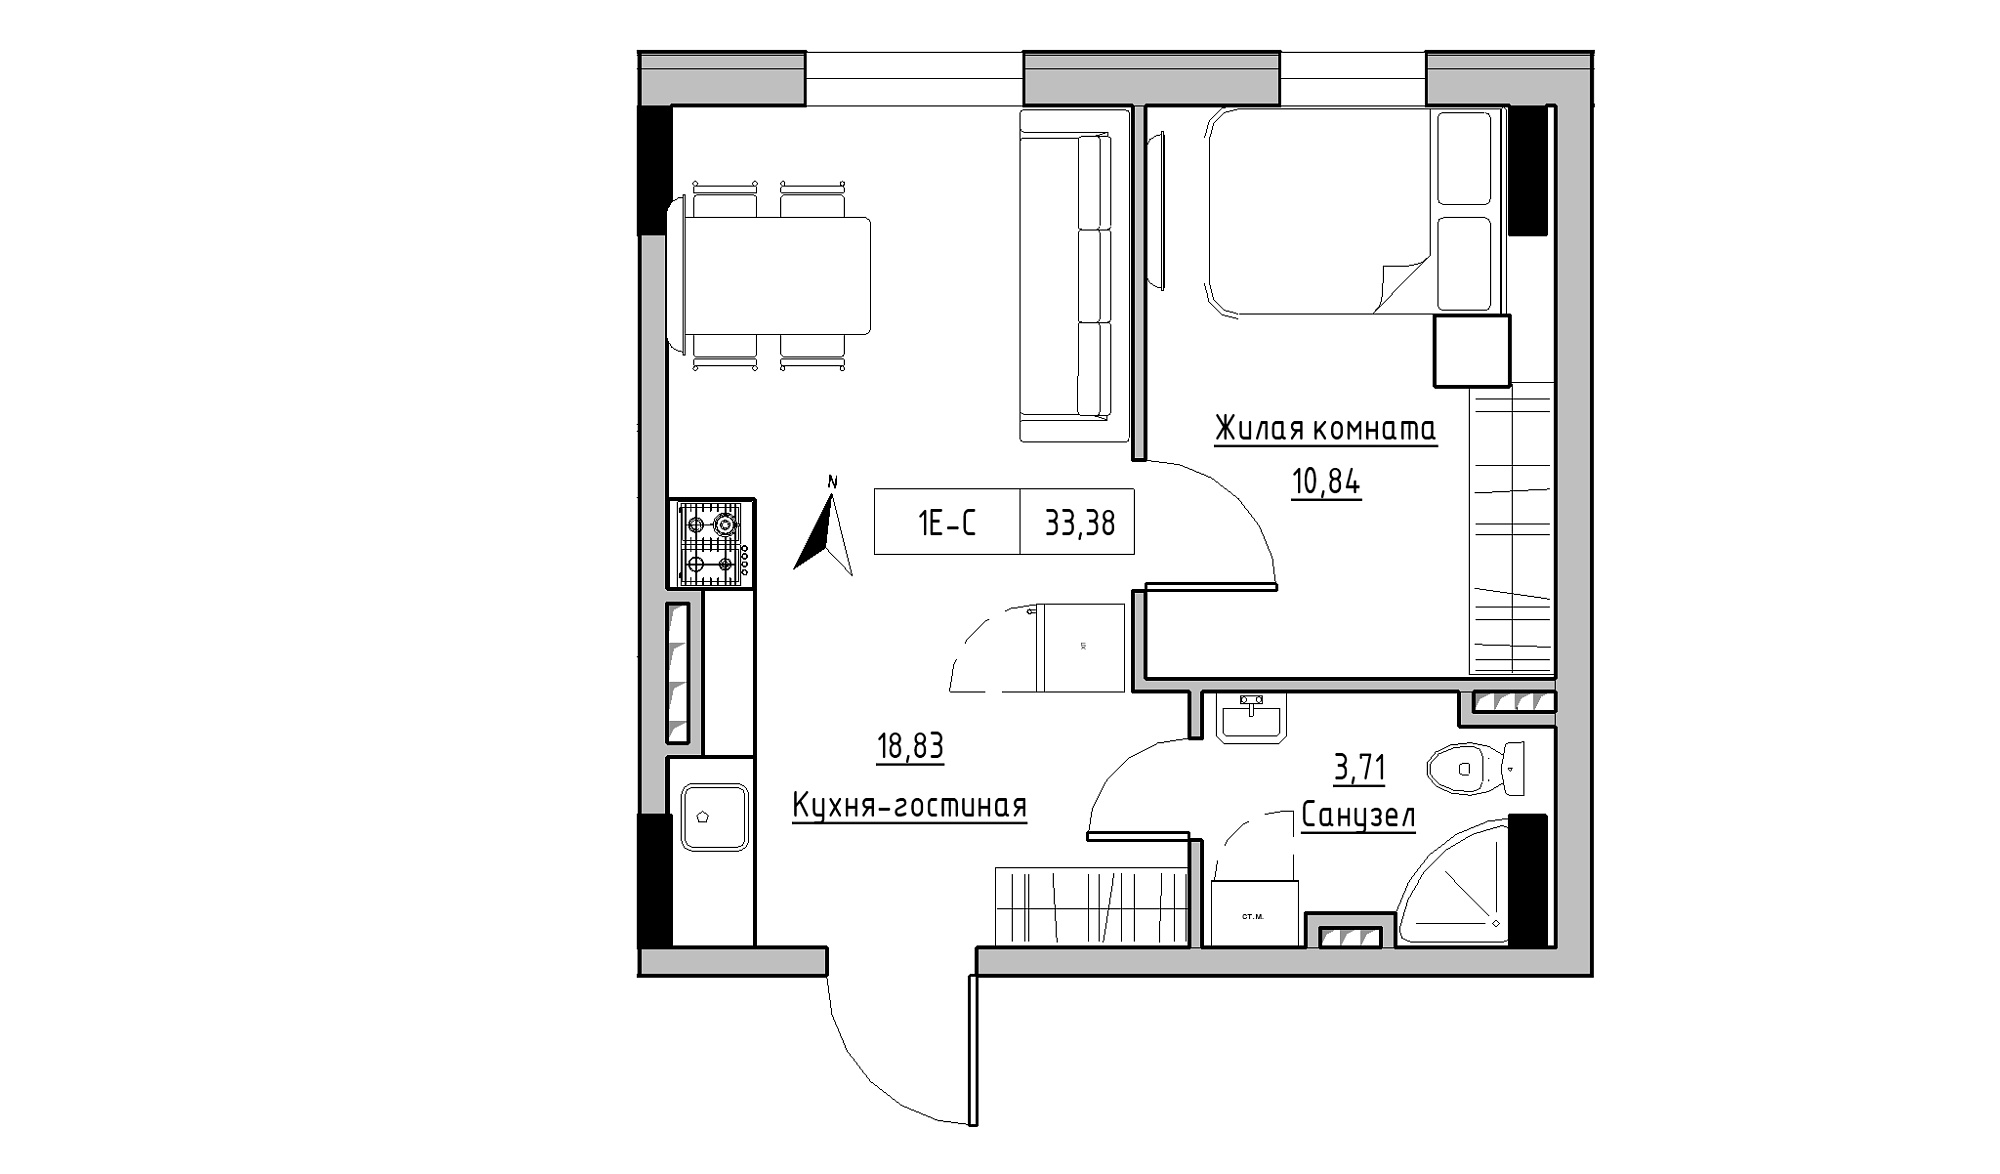 Планування 1-к квартира площею 33.38м2, KS-025-03/0010.